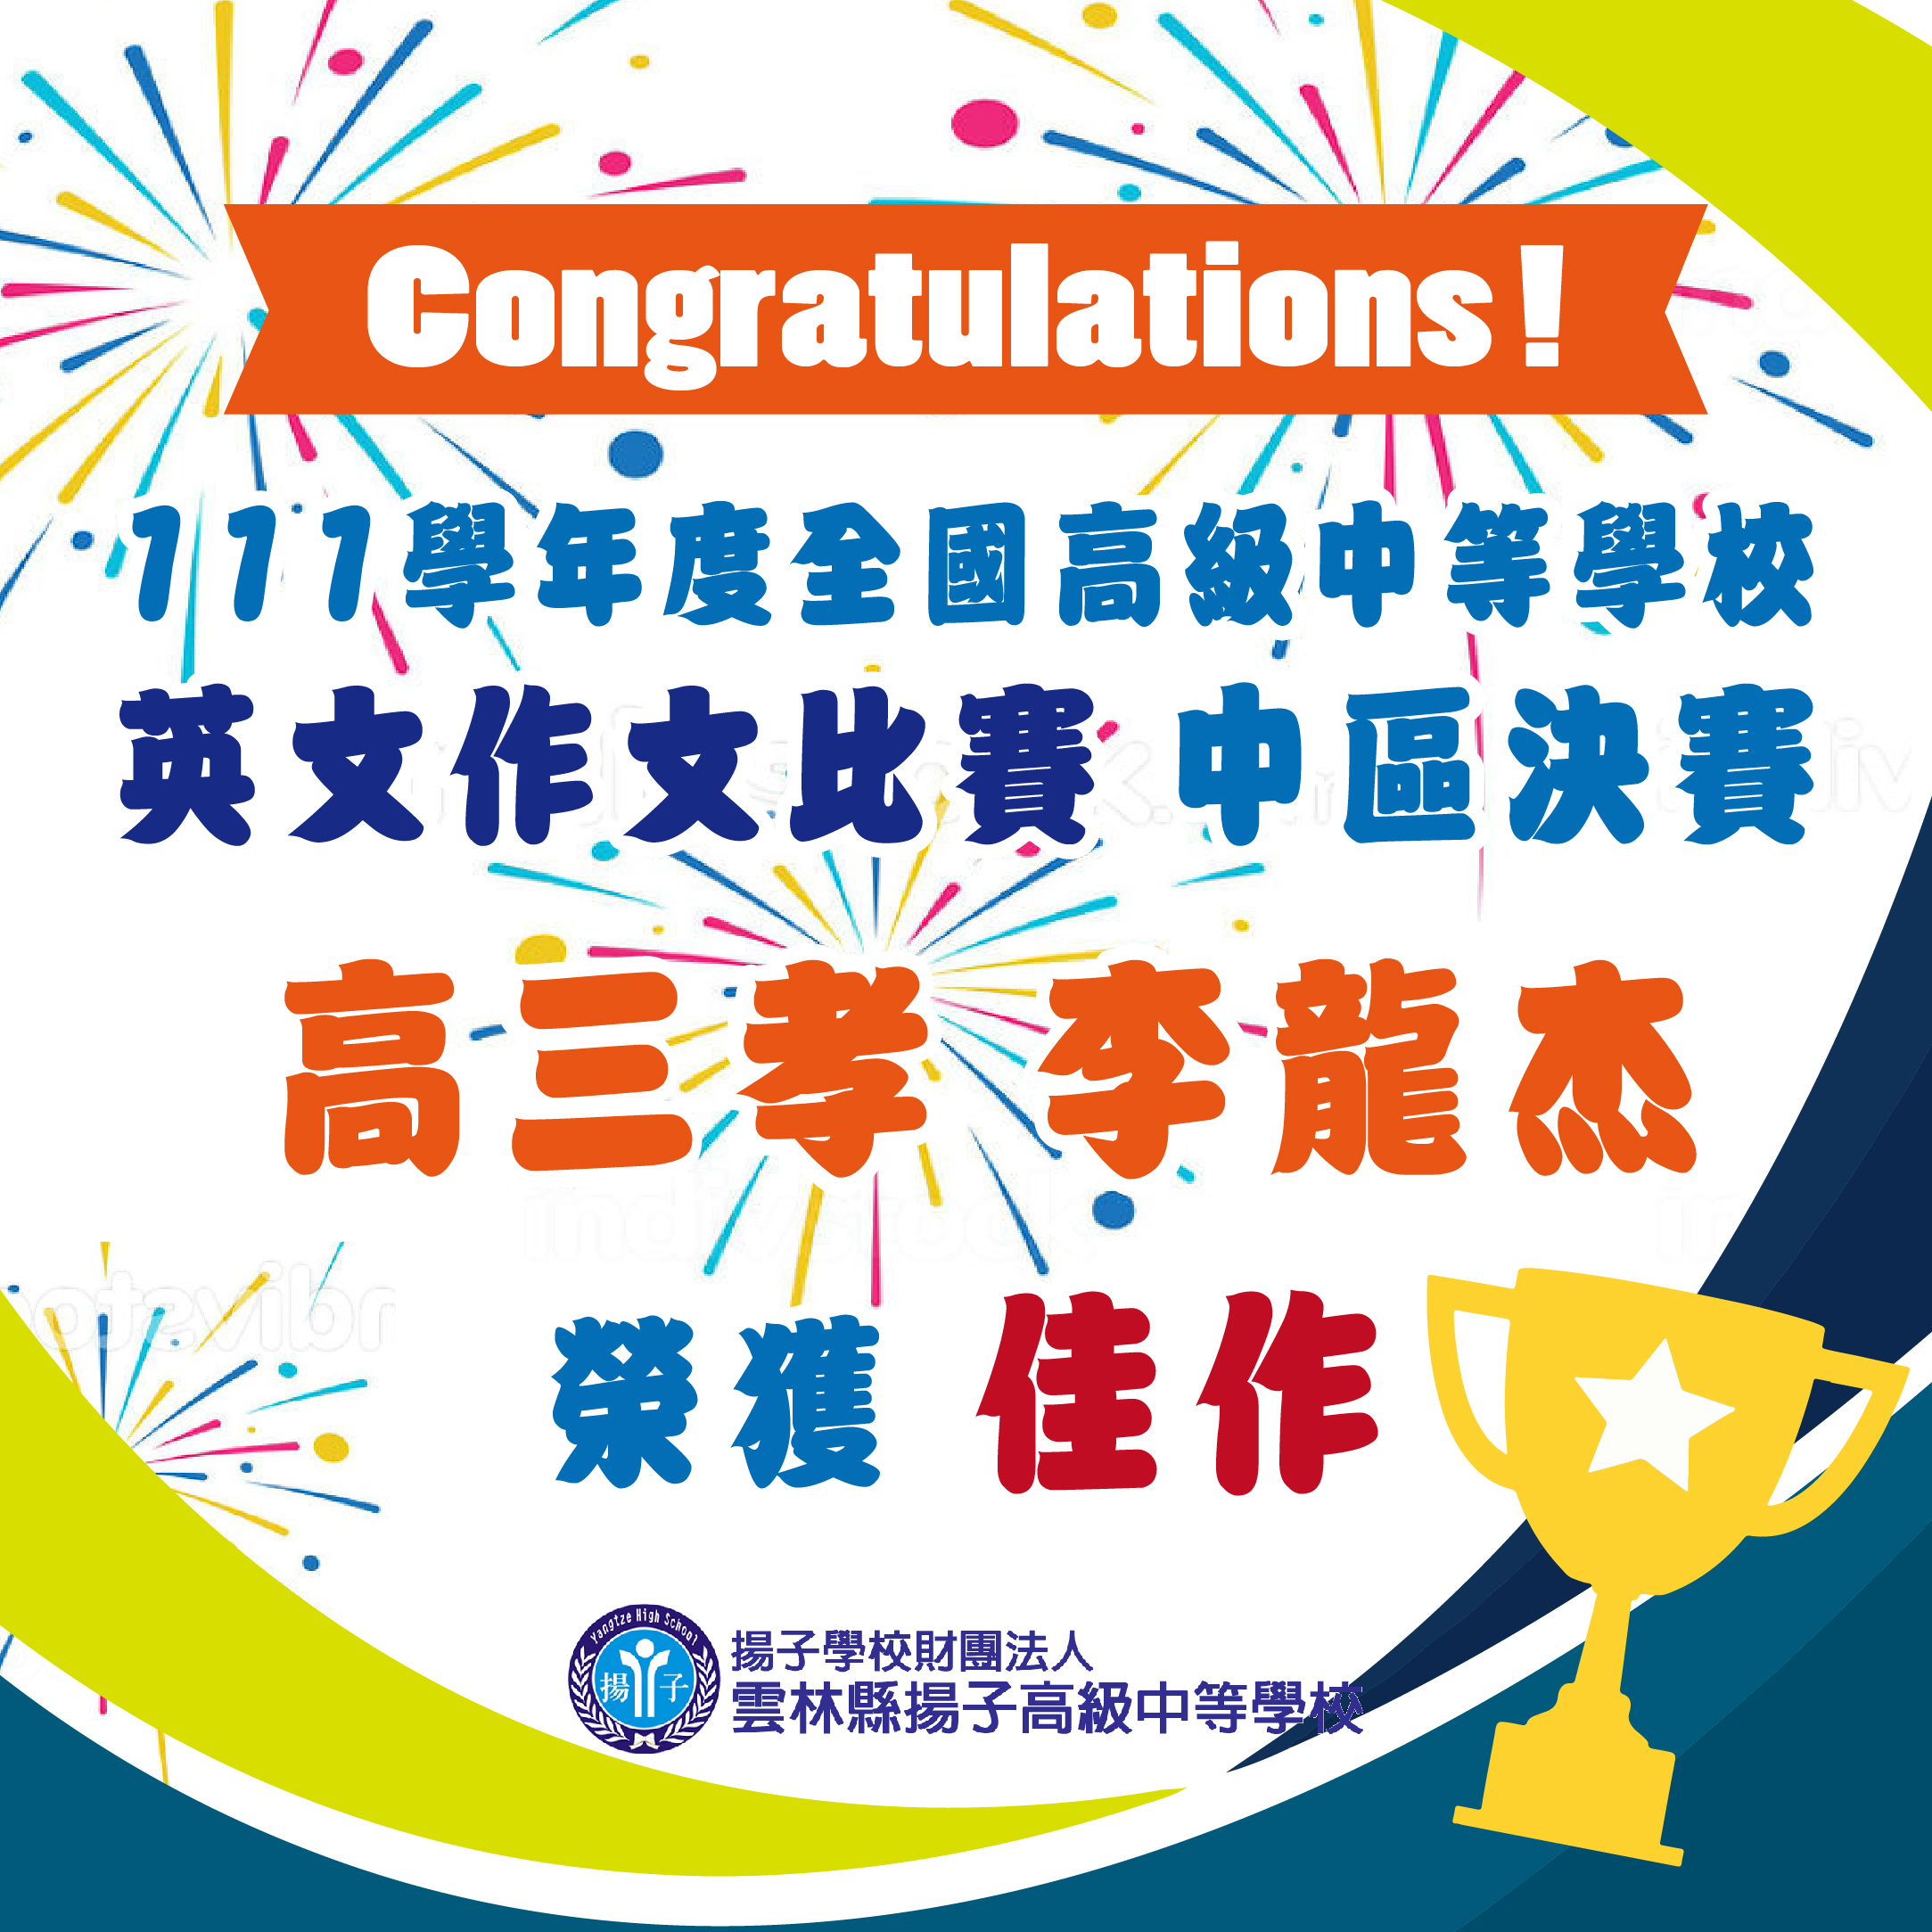 賀~高三孝李龍杰 參加111學年全國高級中等學校 英文作文比賽中區決賽 榮獲佳作!